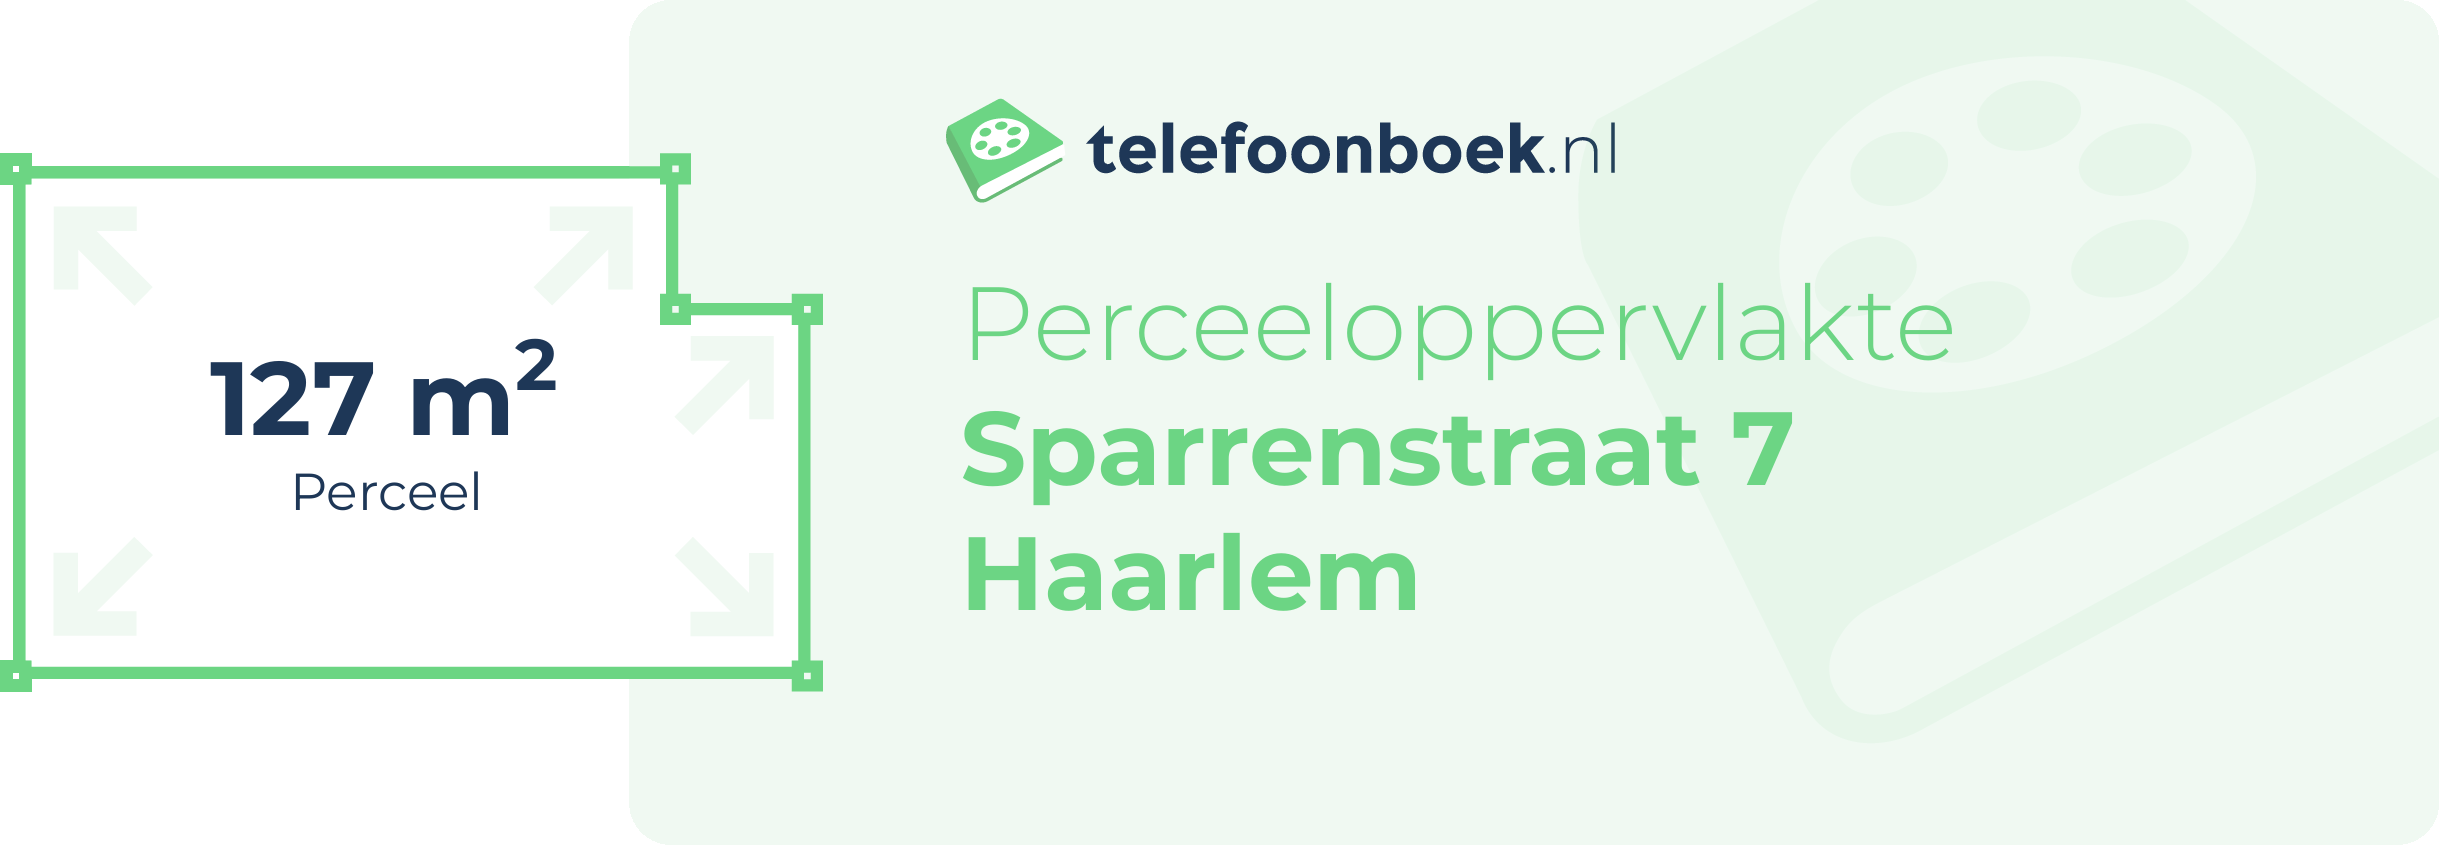 Perceeloppervlakte Sparrenstraat 7 Haarlem